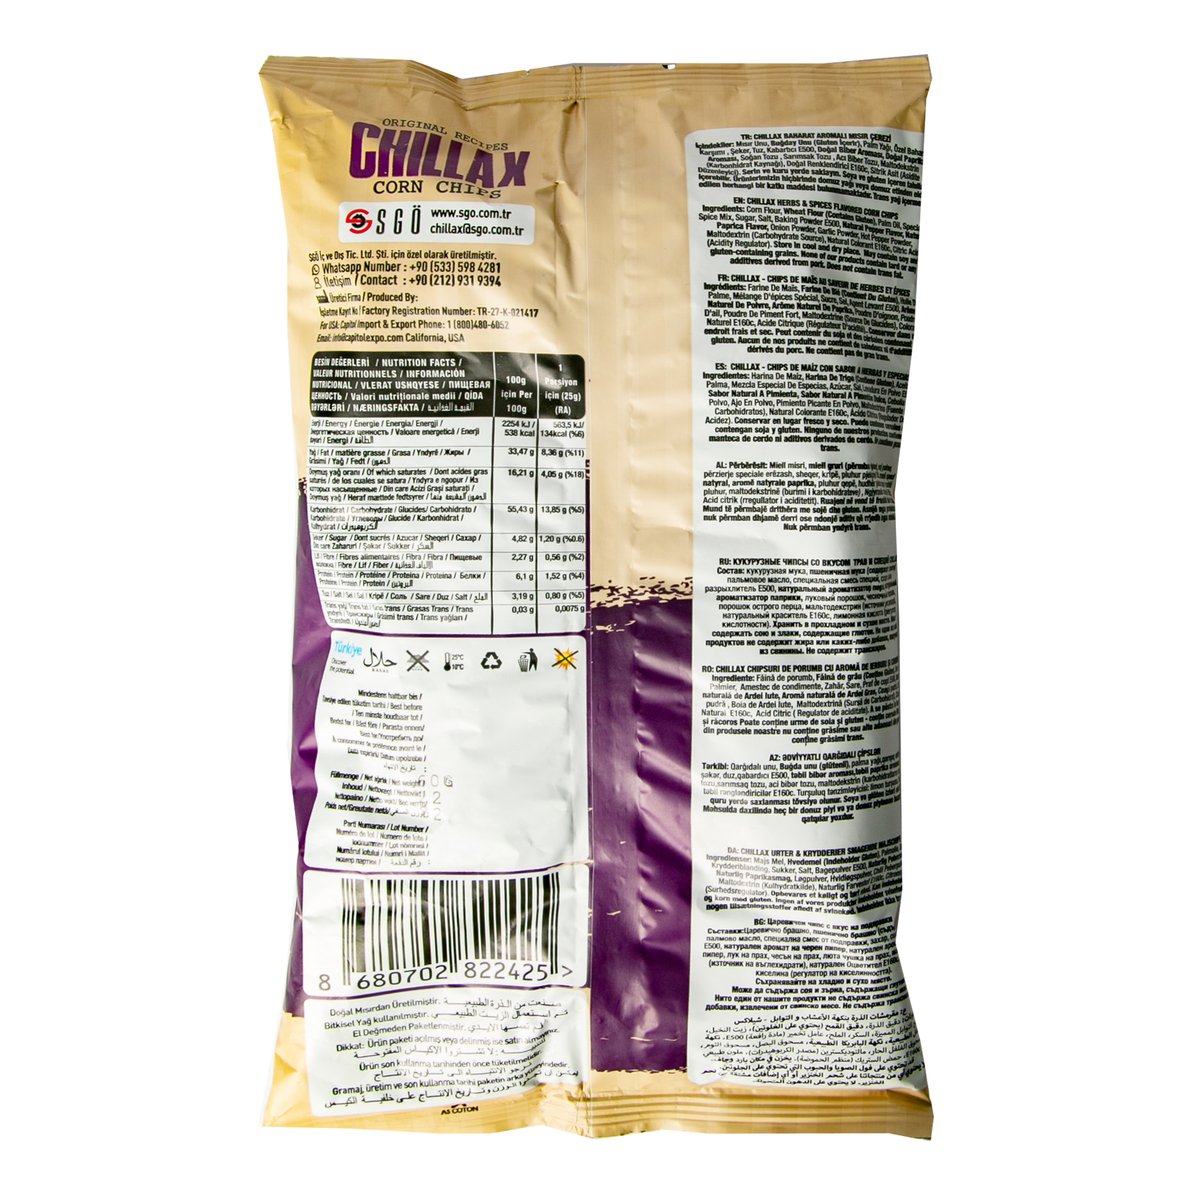 Chillax Herbs & Spices Corn Chips 60 g